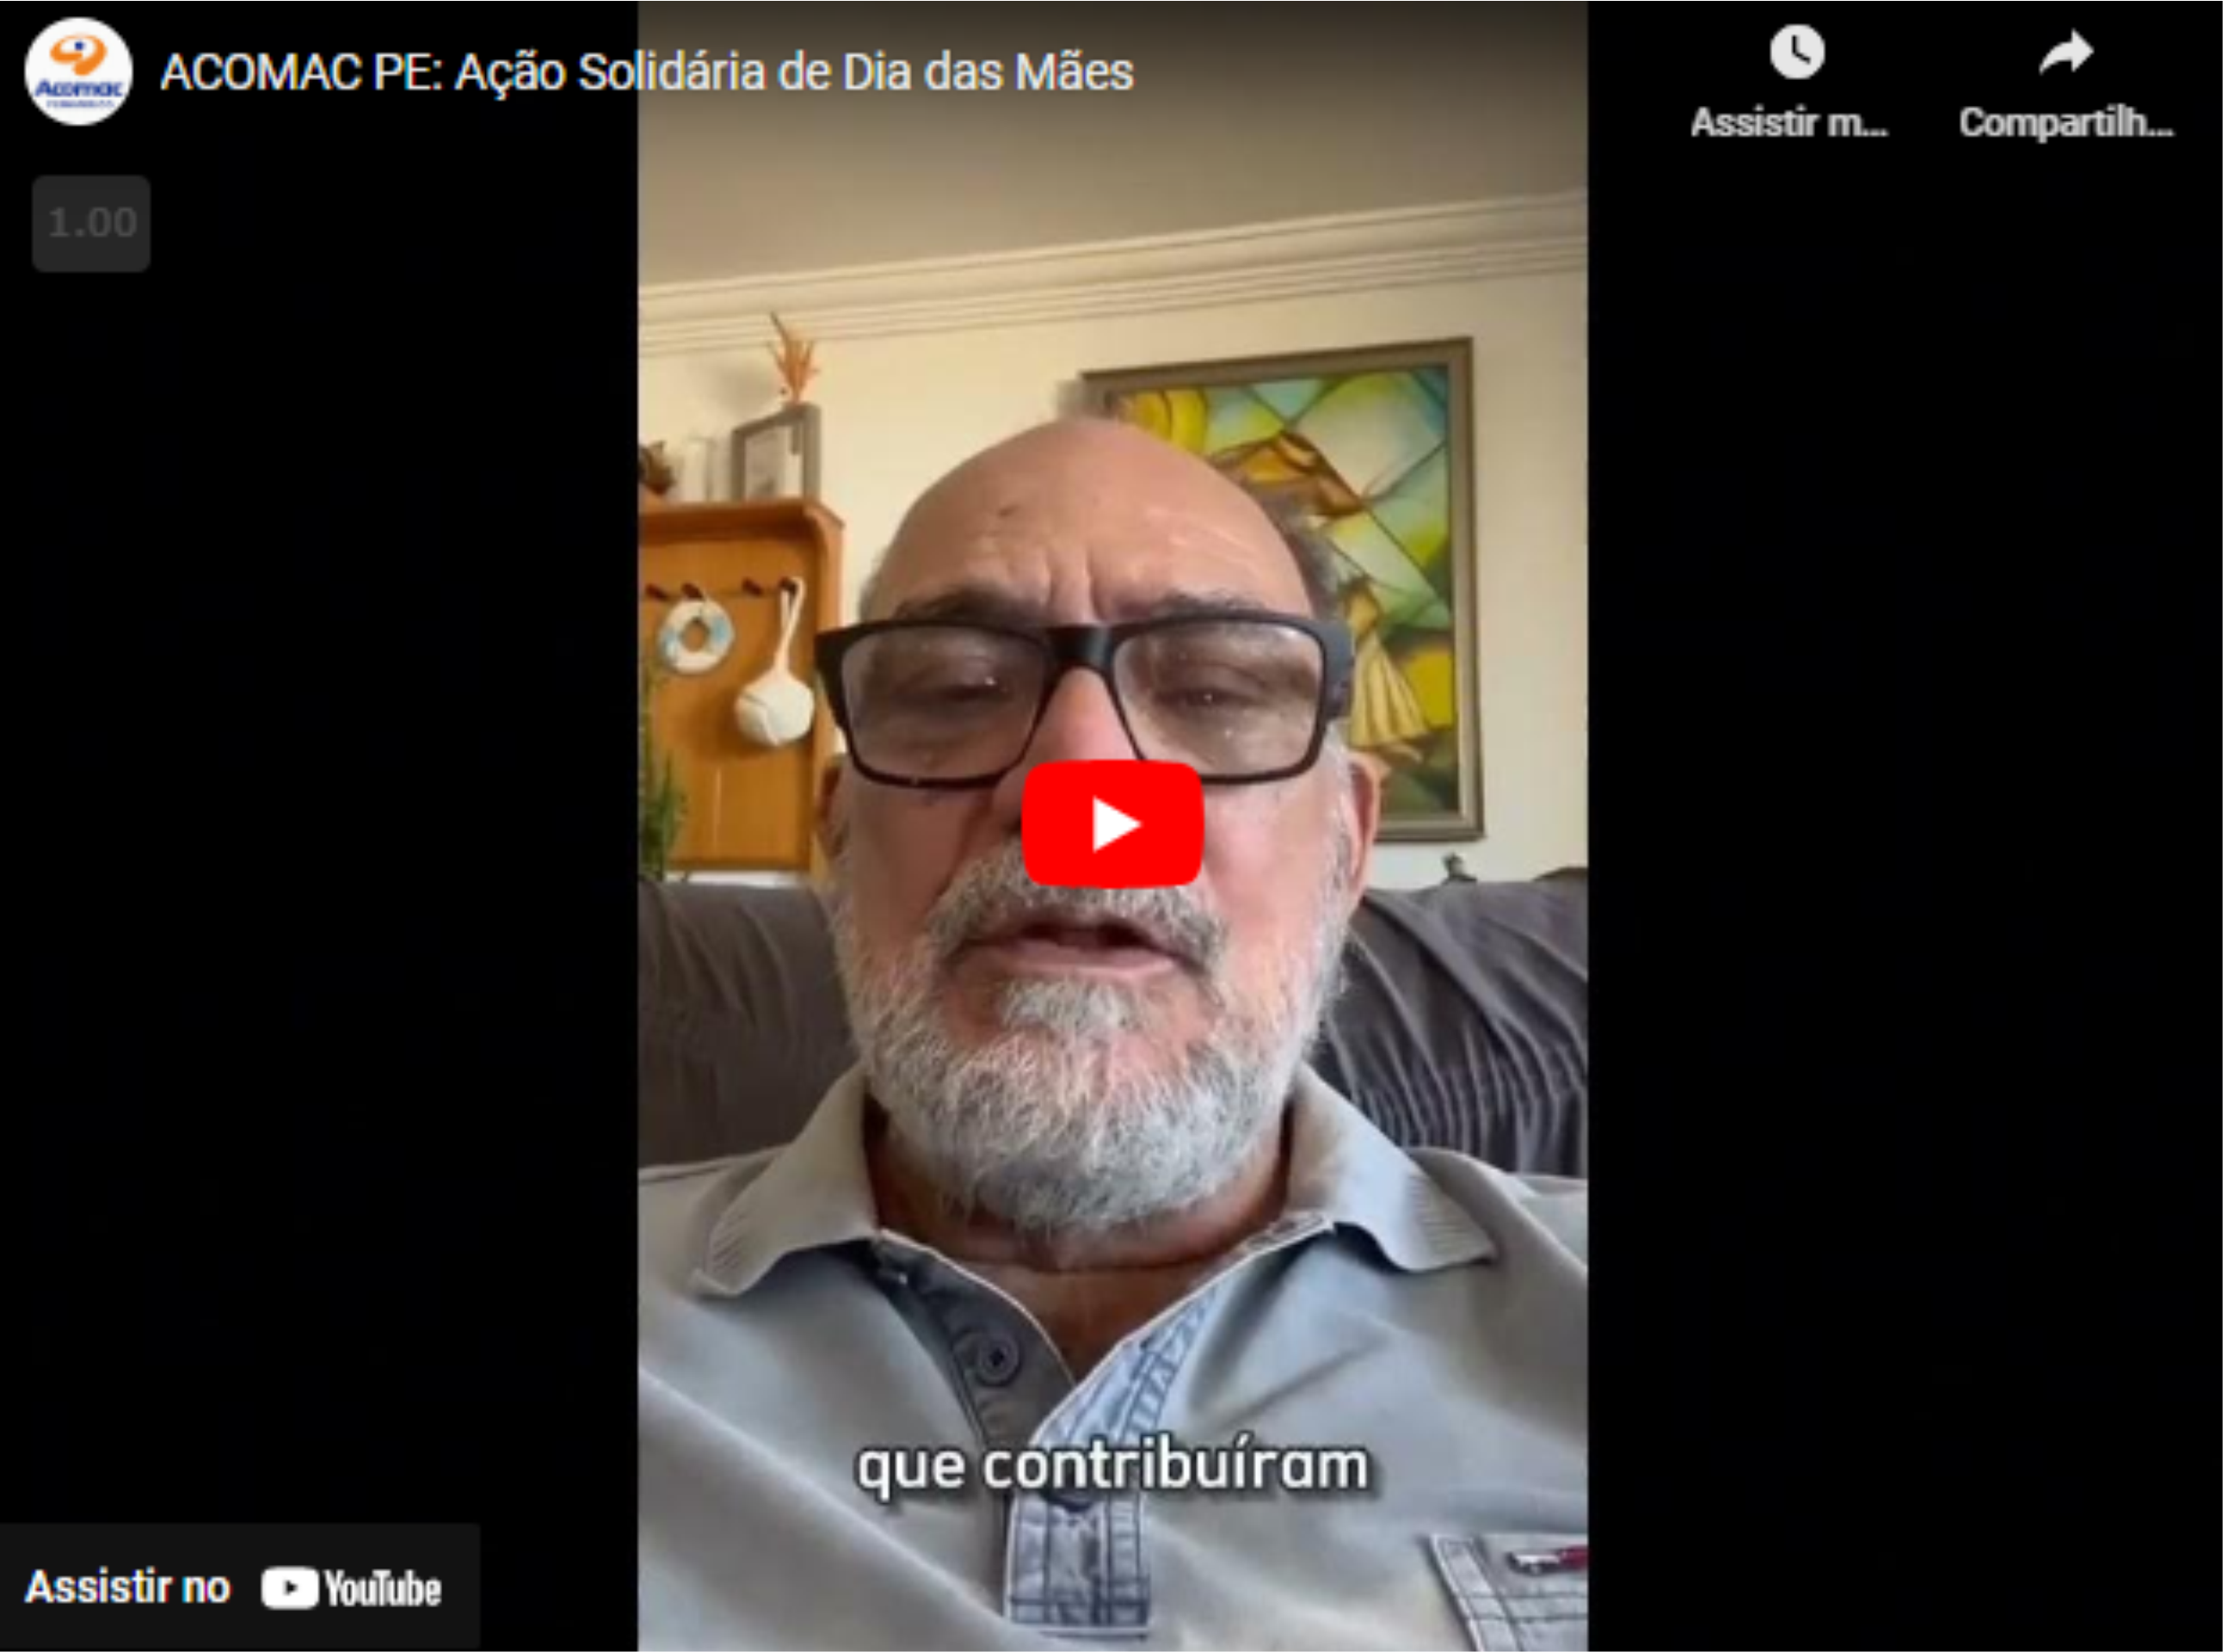 You are currently viewing ACOMAC PE: Ação Solidária de Dia das Mães